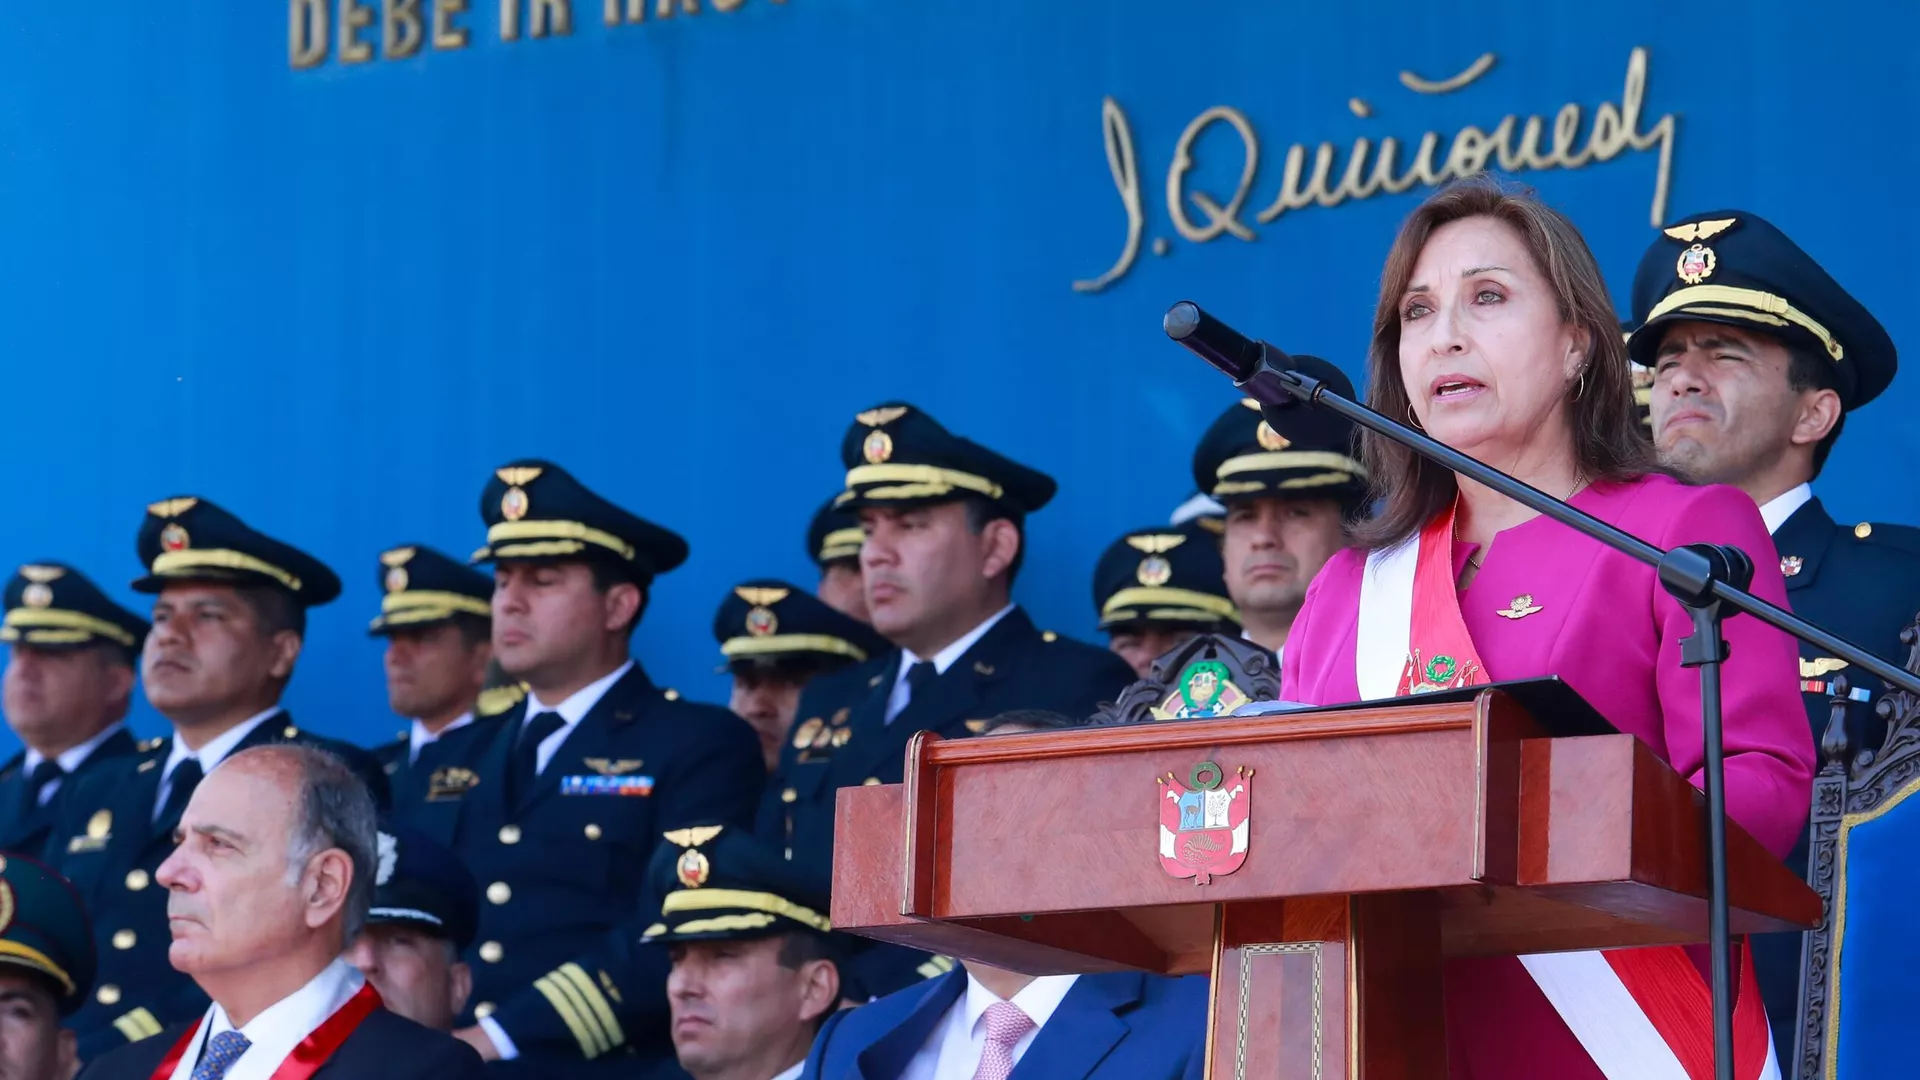  Qué implica en Perú el delito de genocidio por el que acusan a la presidenta Dina Boluarte